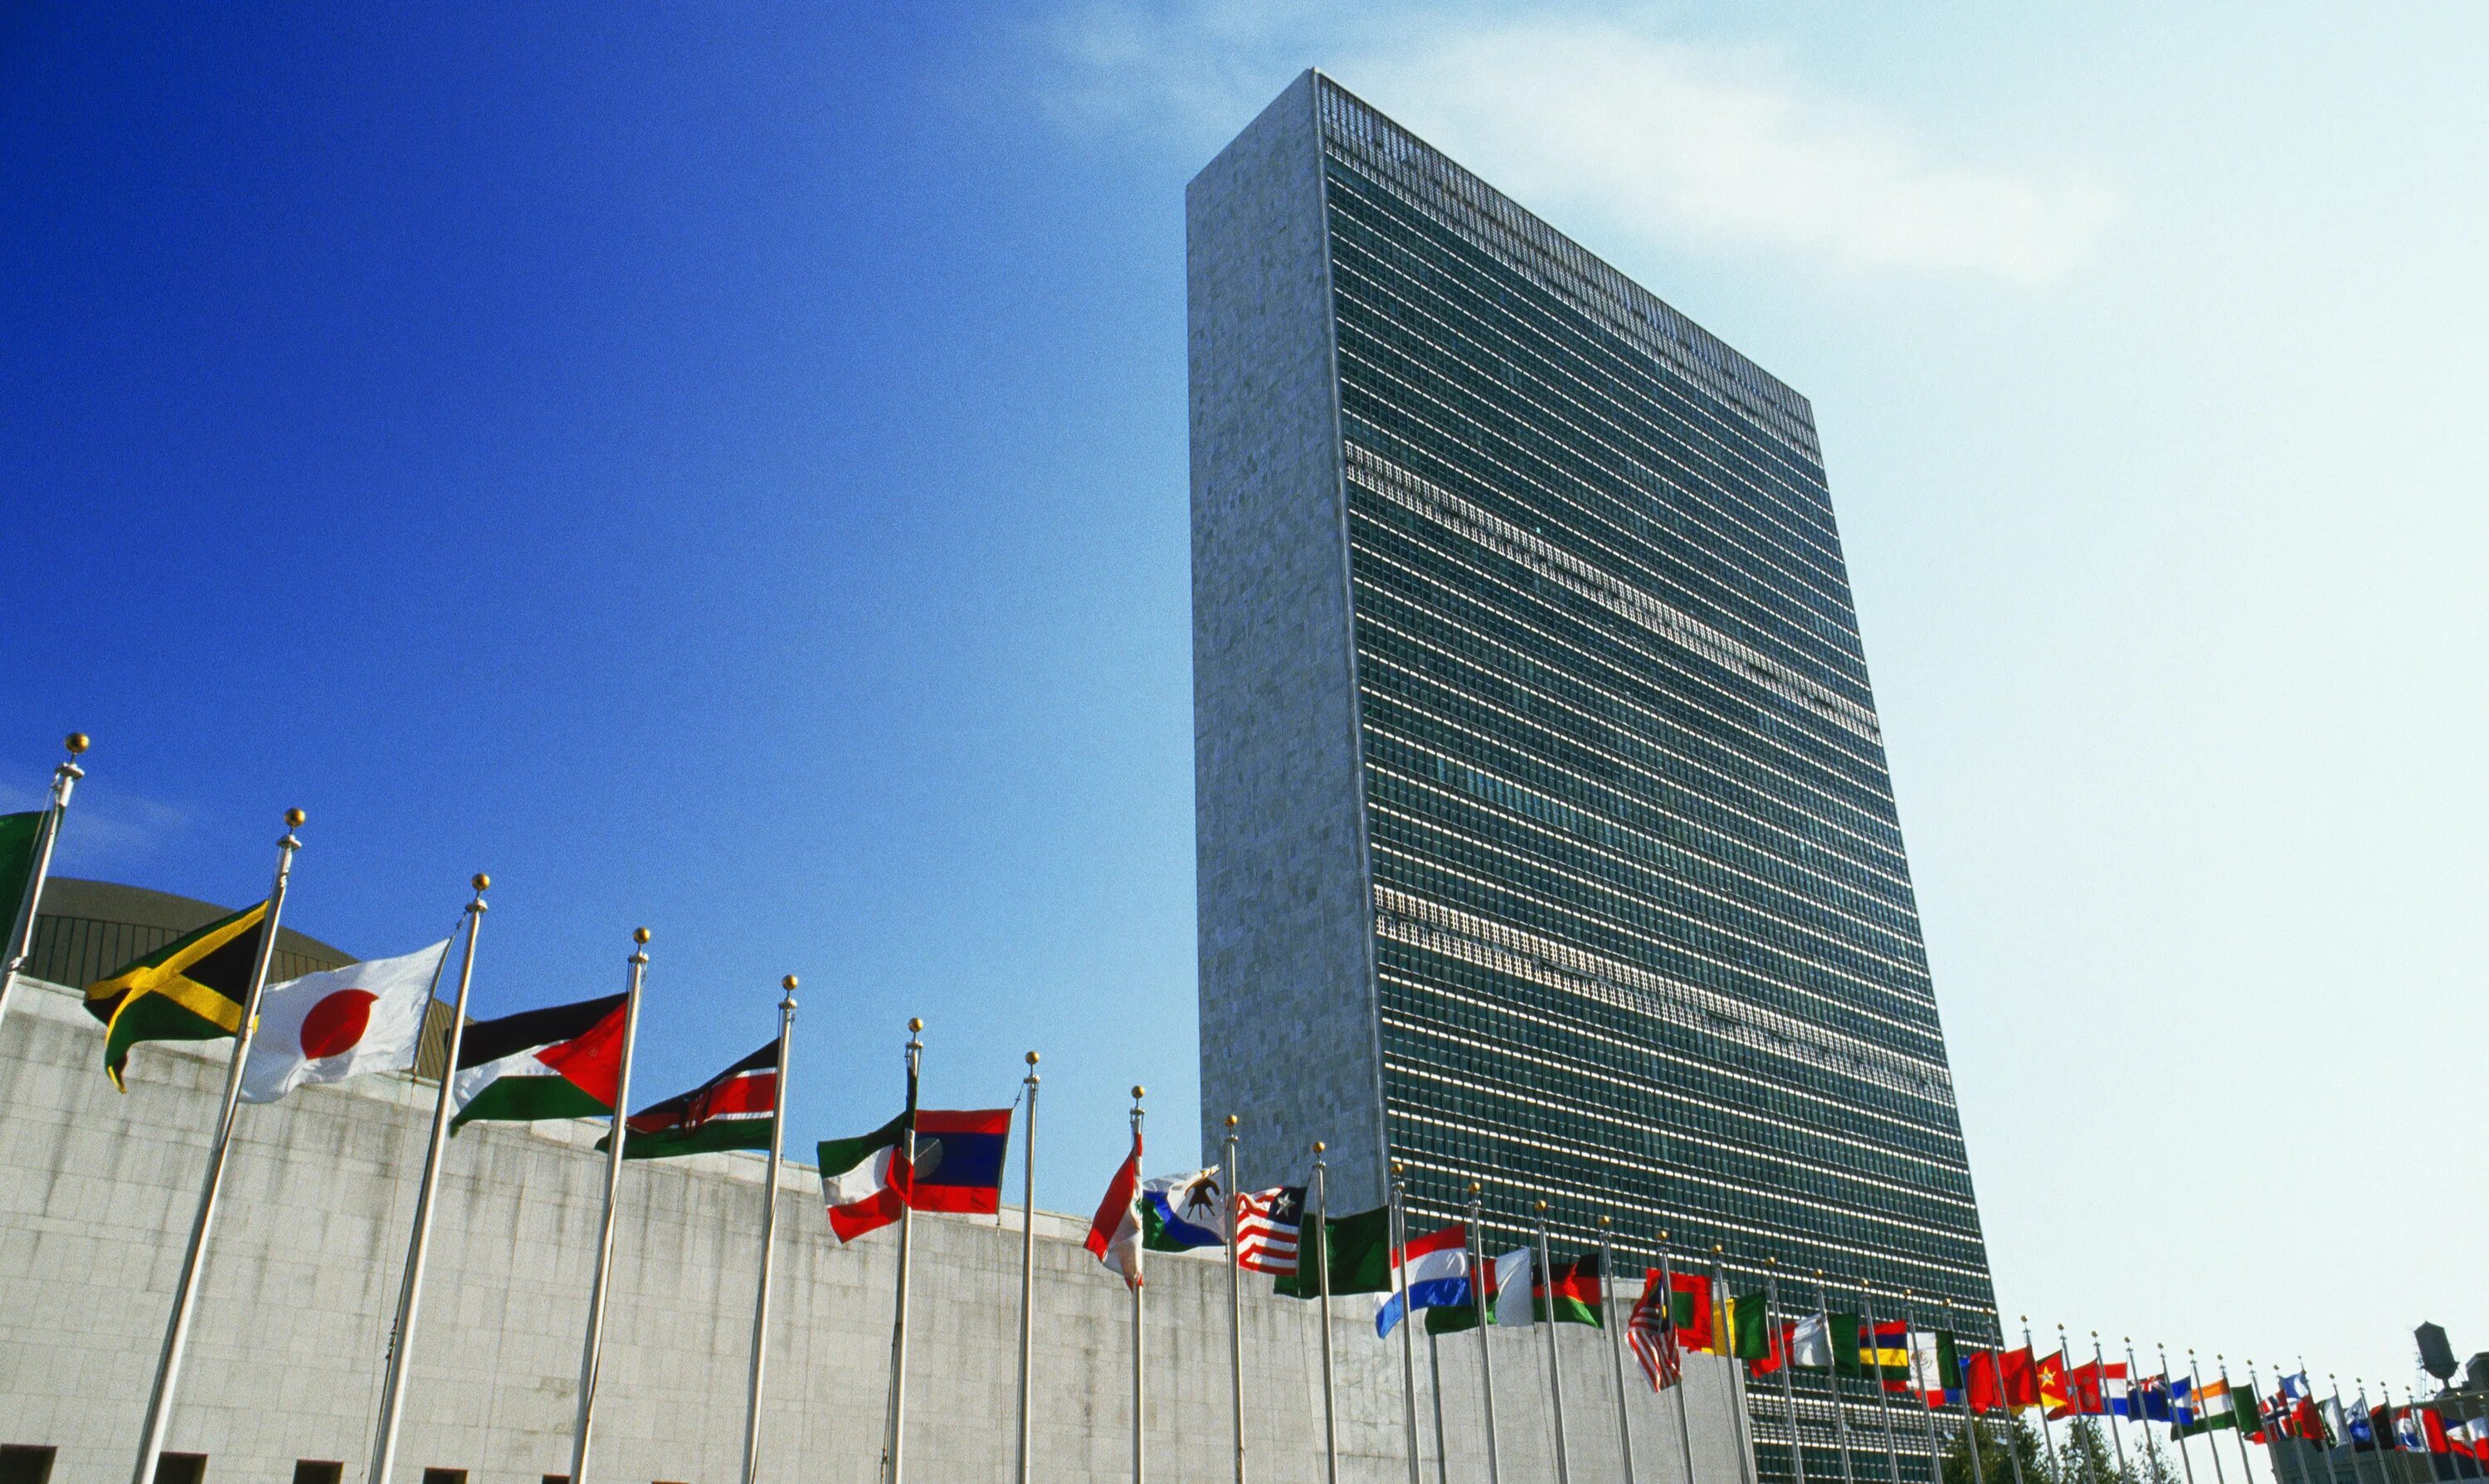 Организации оон в сша. Штаб-квартира ООН В Нью-Йорке. Здание ООН В Нью-Йорке. Здание Генеральной Ассамблеи ООН В Нью-Йорке. Штаб-квартиры организации Объединённых наций в Нью-Йорке..